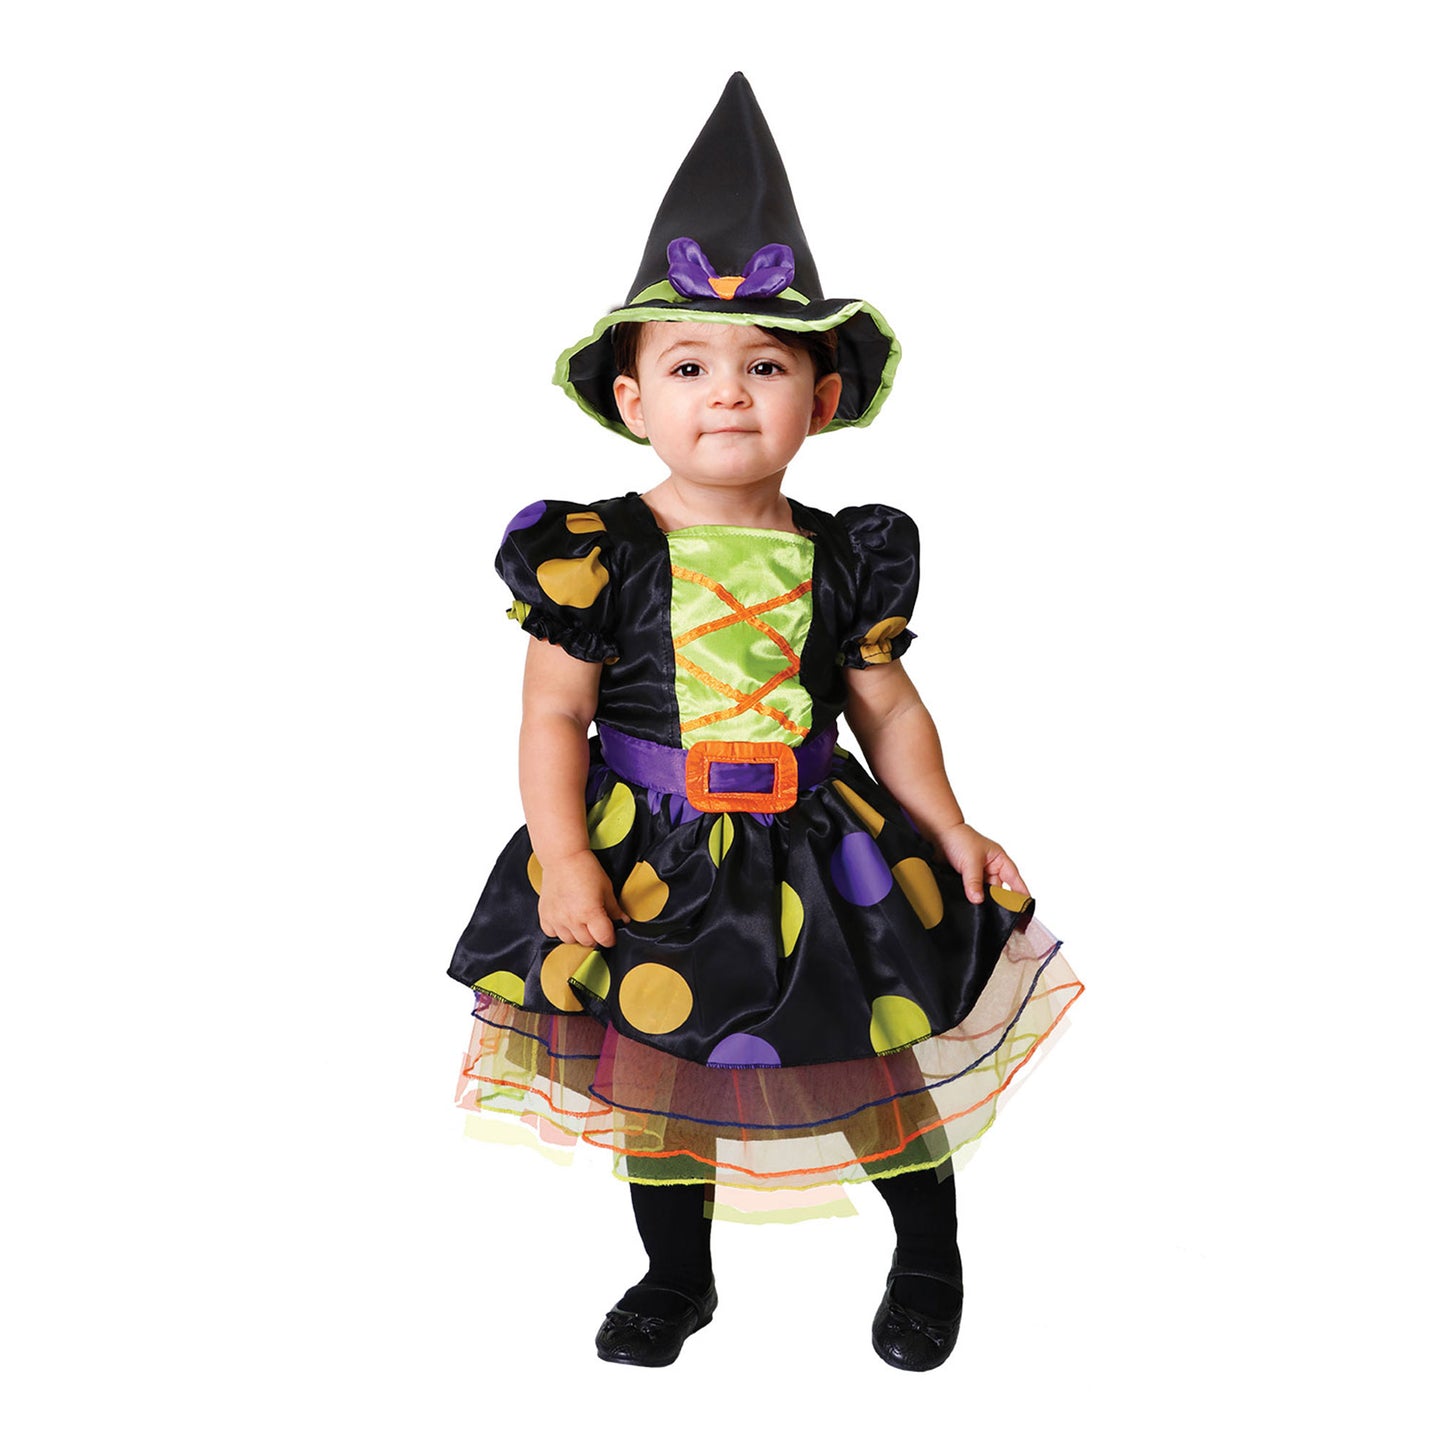 Costume Cauldron Cutie Girls 6-12 Months